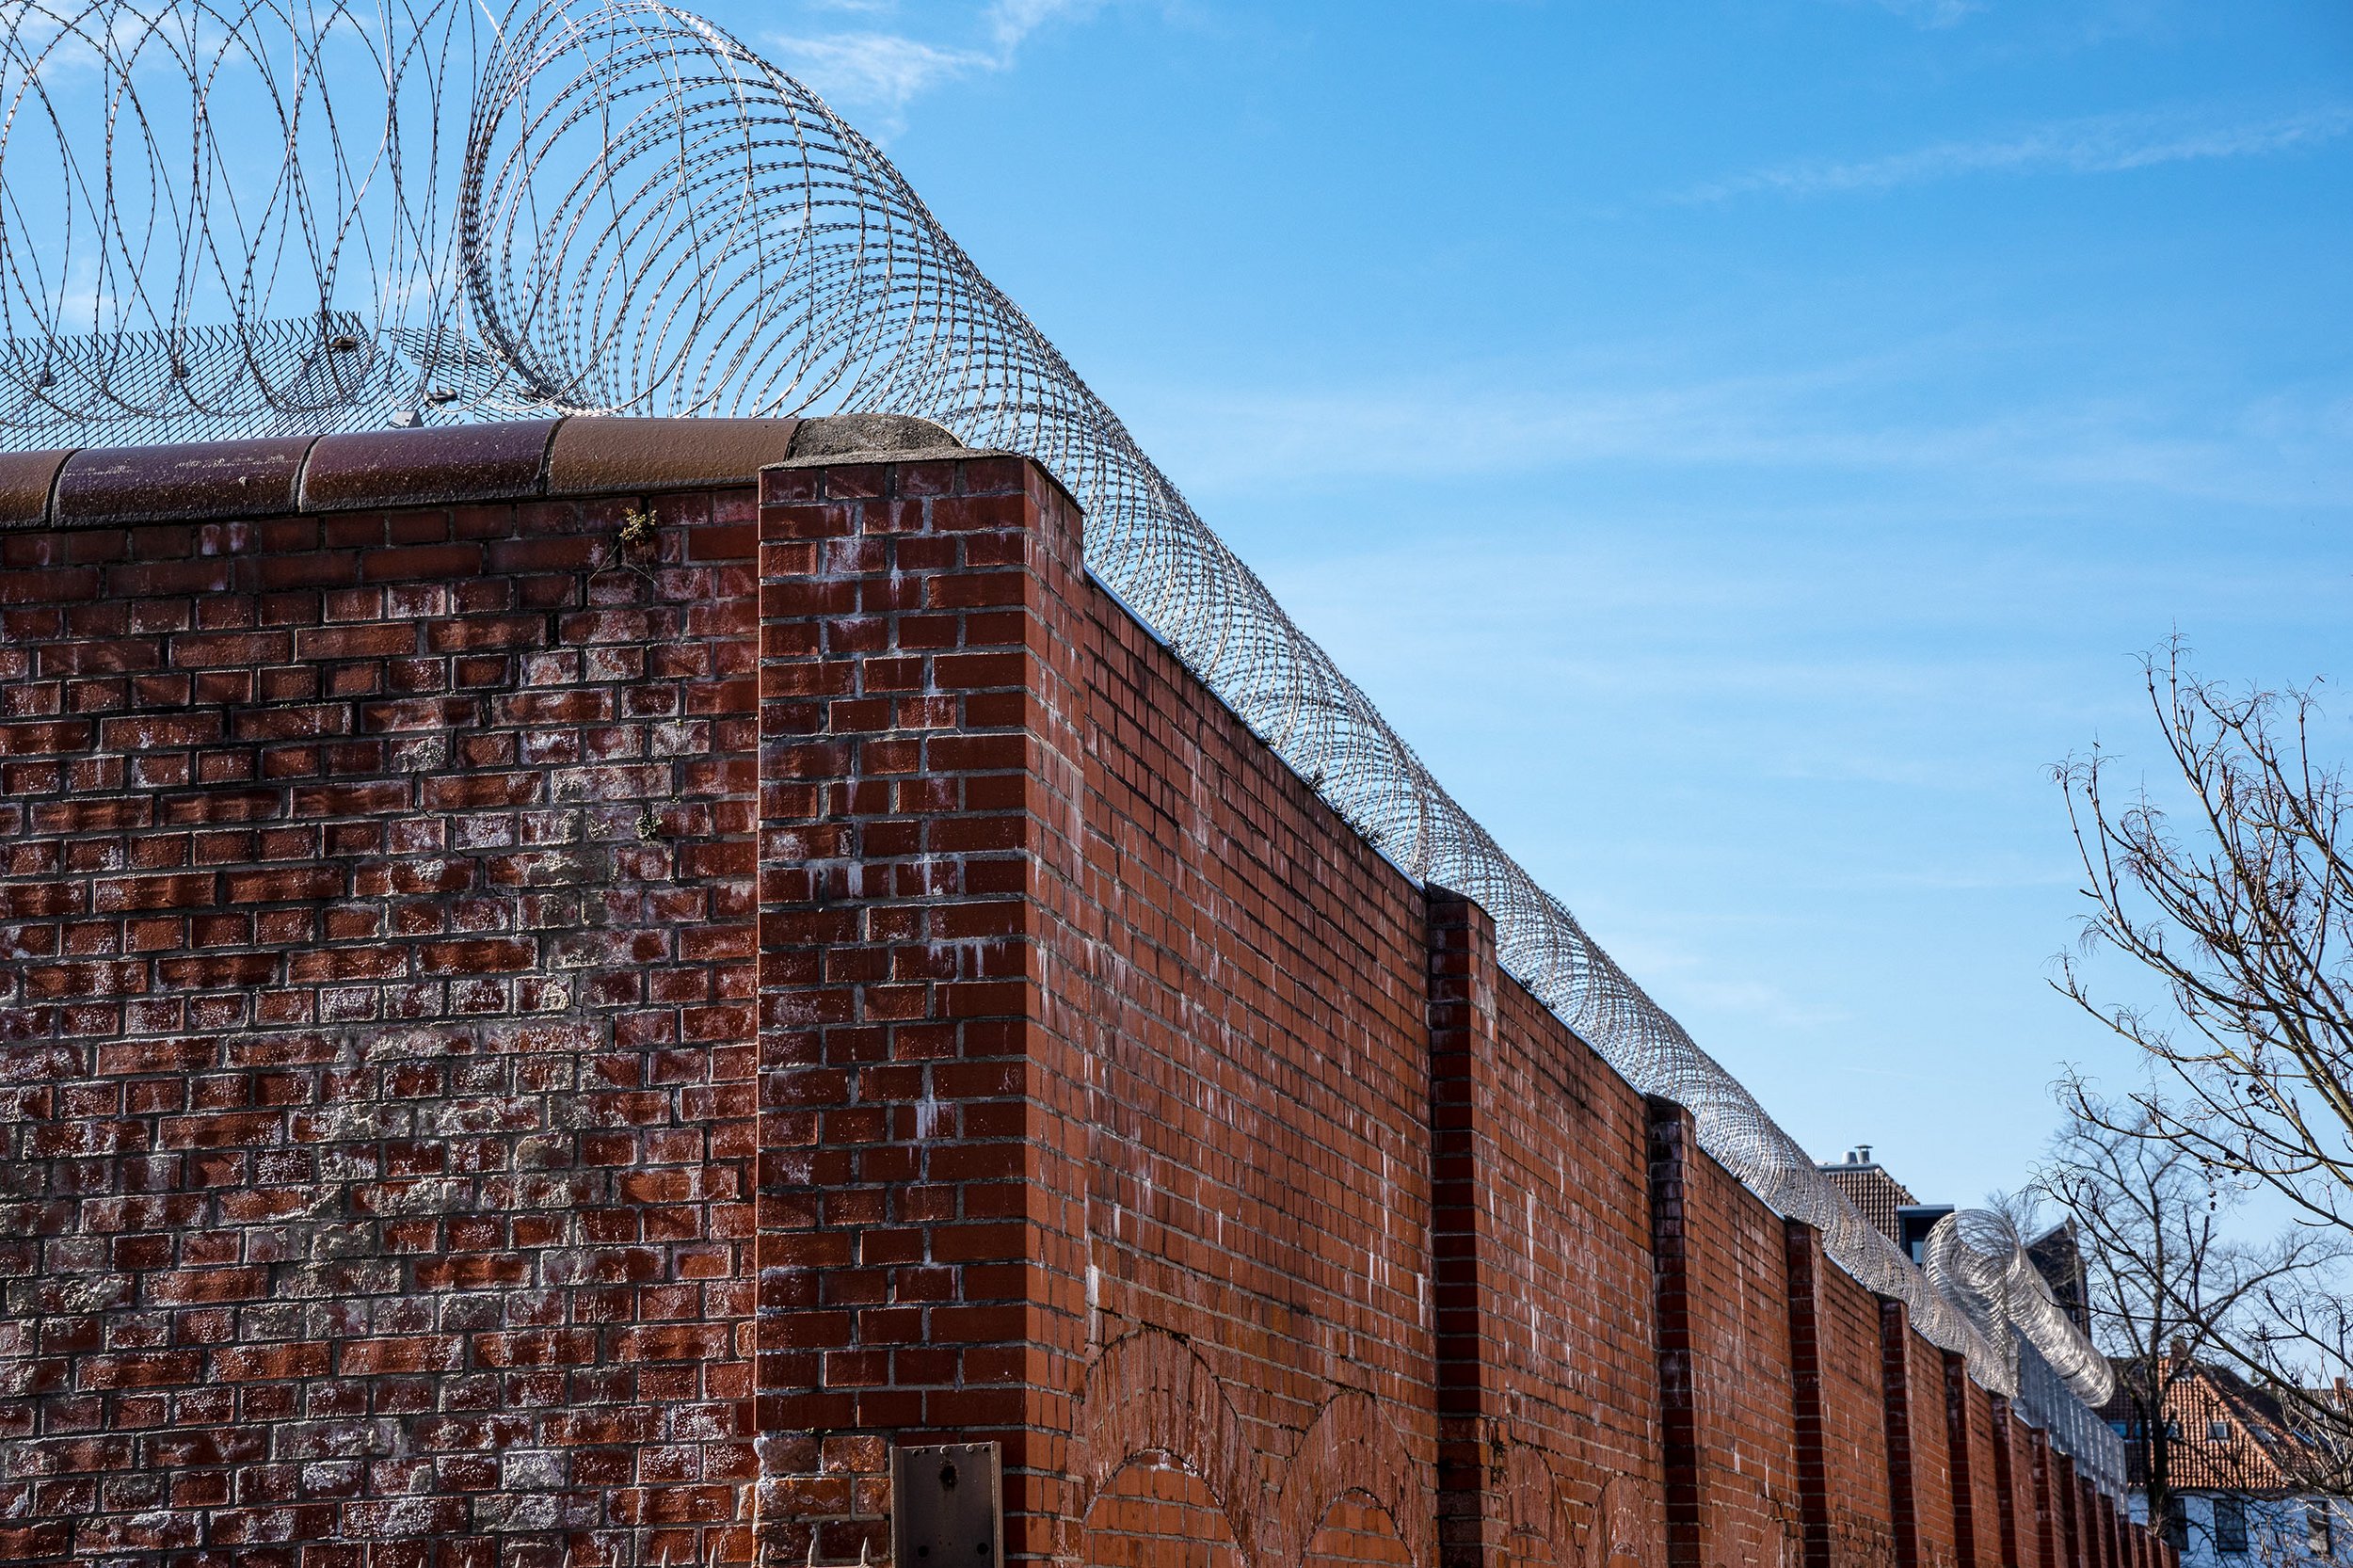 Gefängnismauer aus rotem Backstein mit aufgesetzter Stacheldrahtrolle